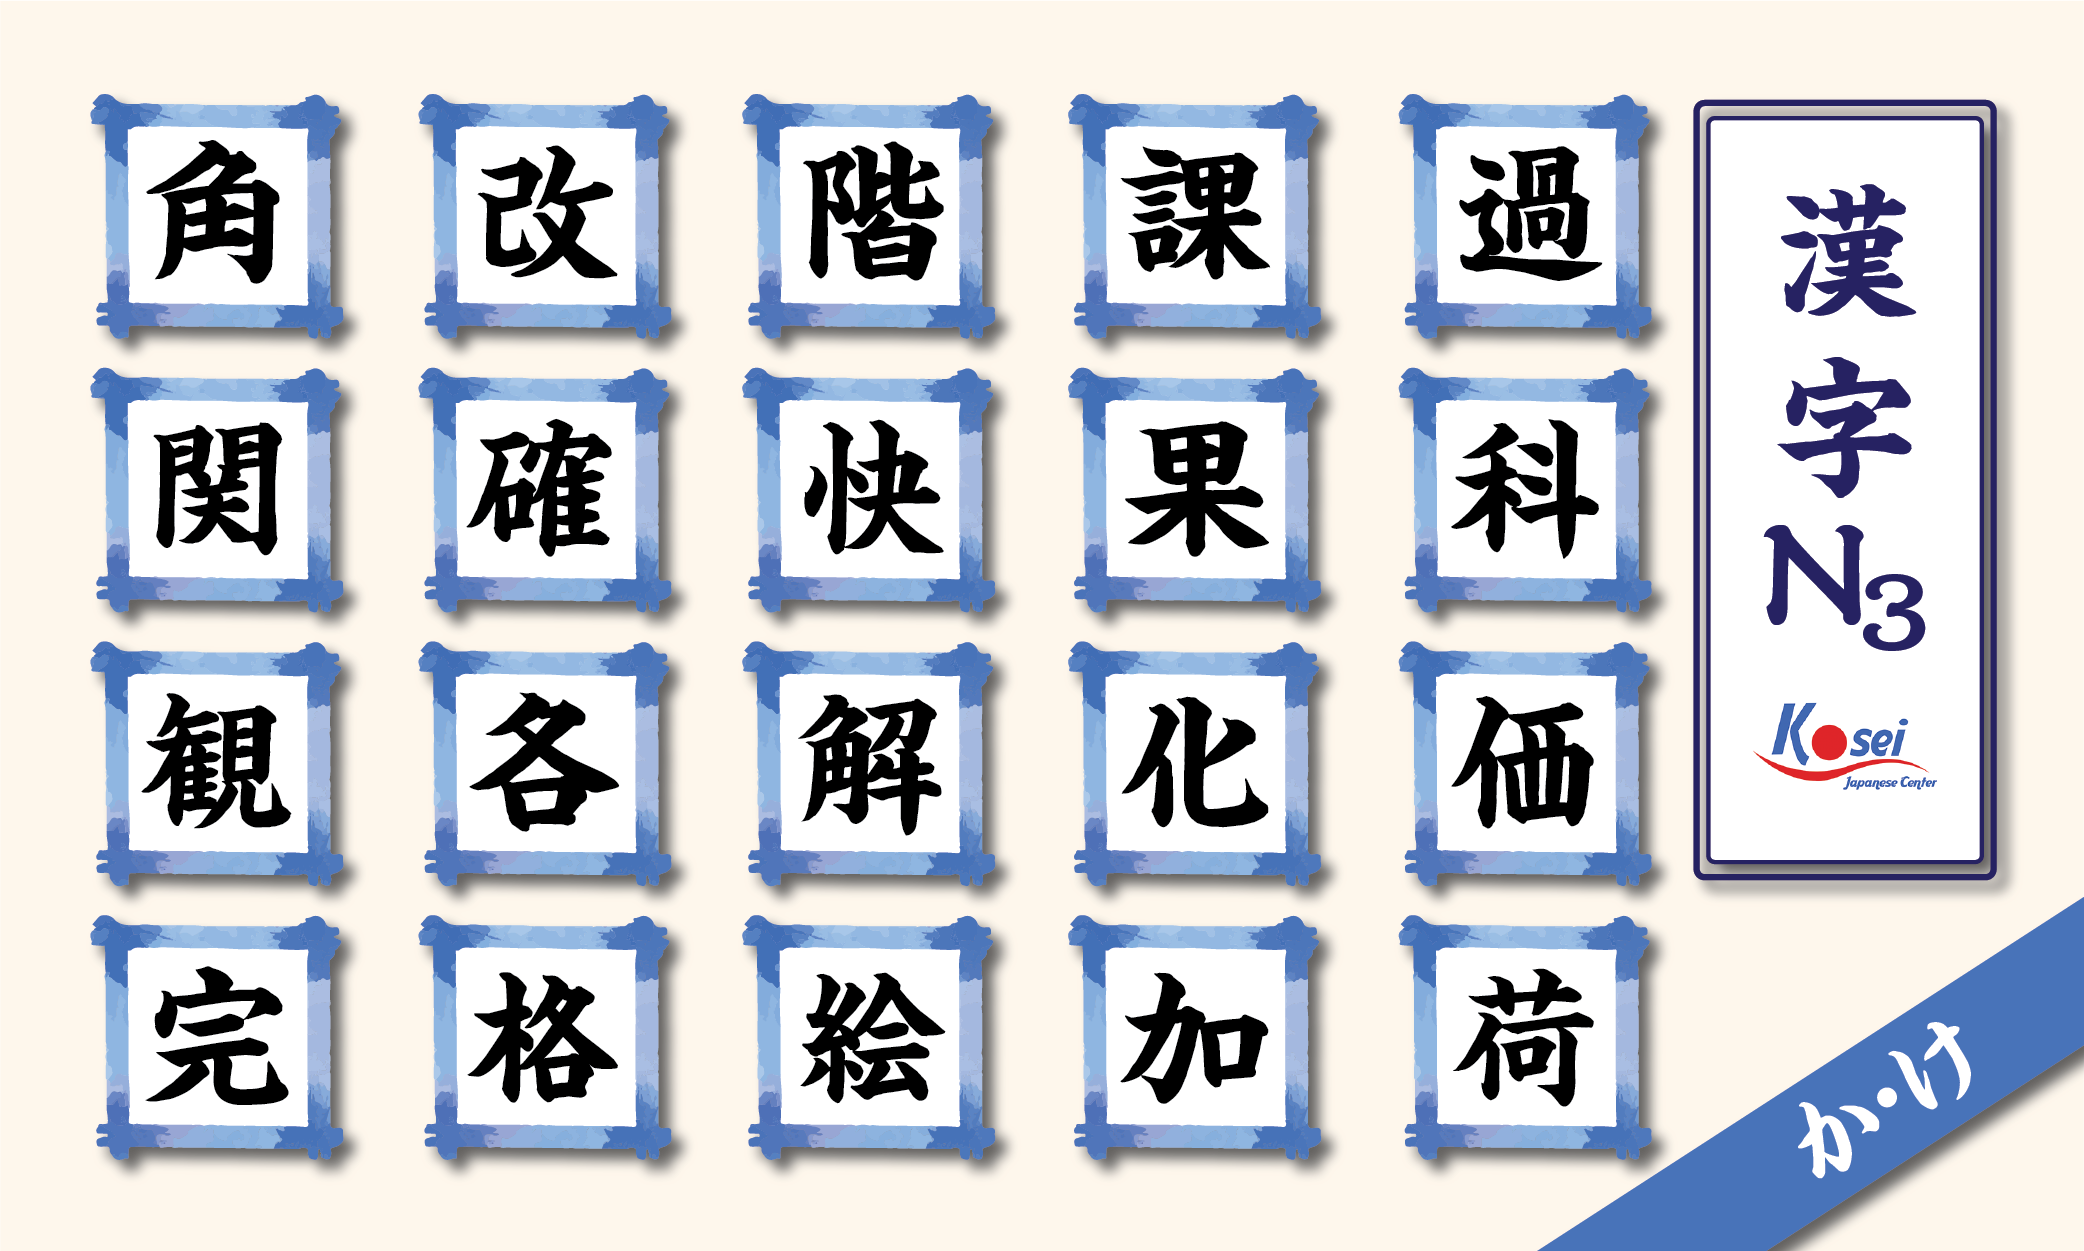 kanji n3 theo âm on hàng k